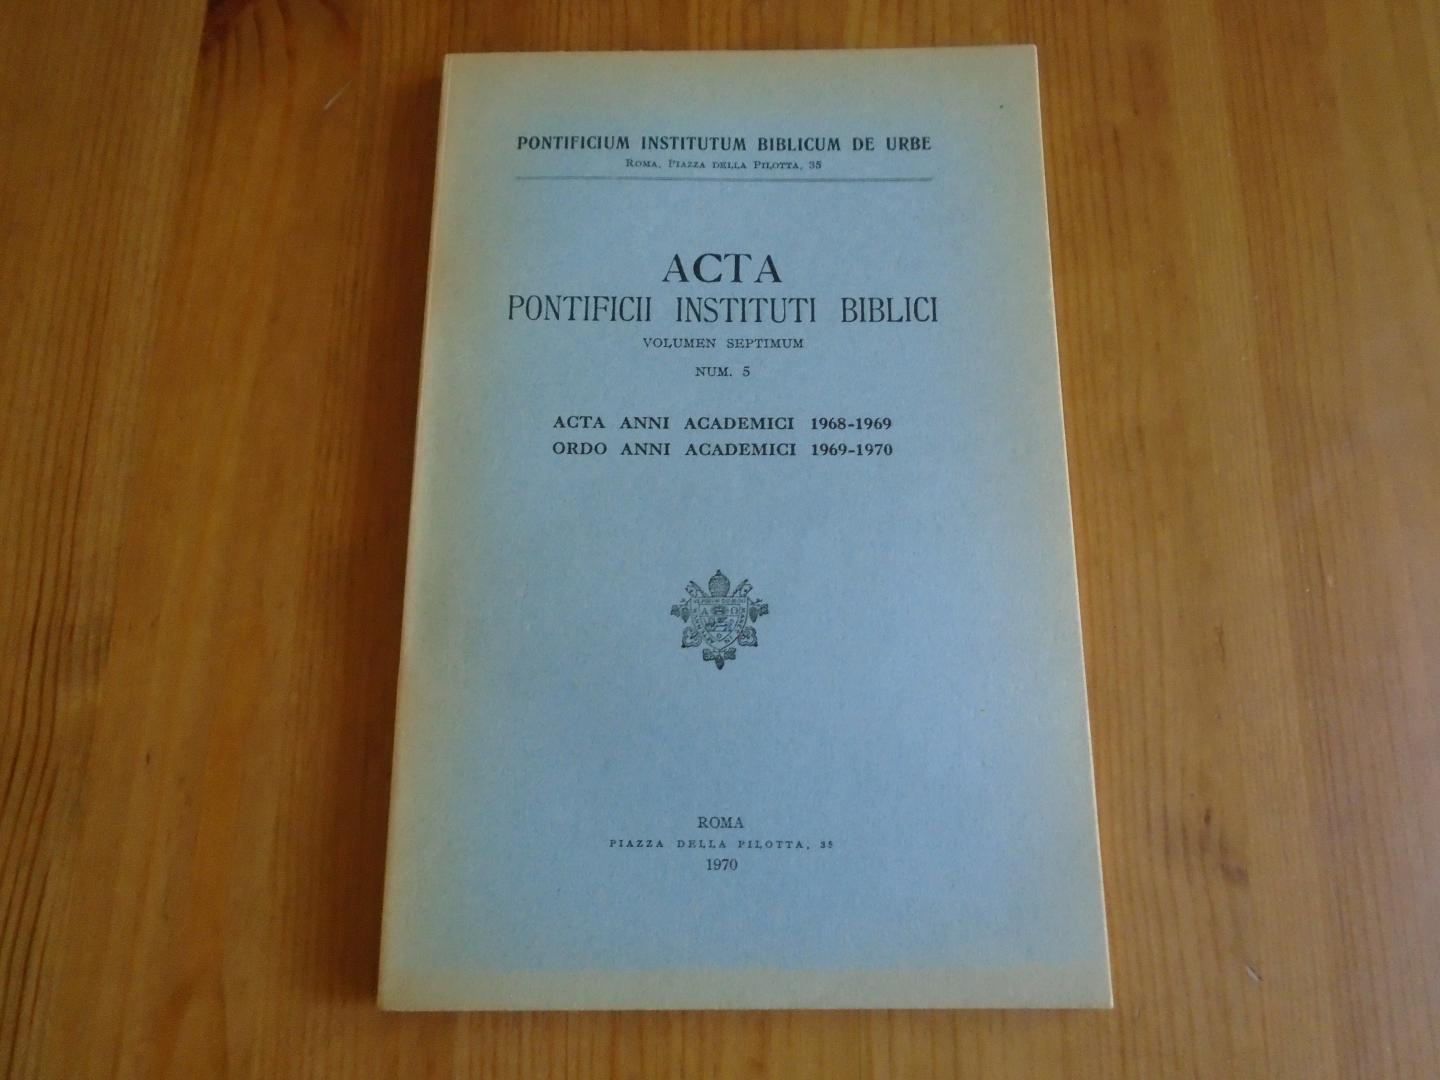  - Acta Pontificii Instituti Biblici. Volumen septimum, num. 5